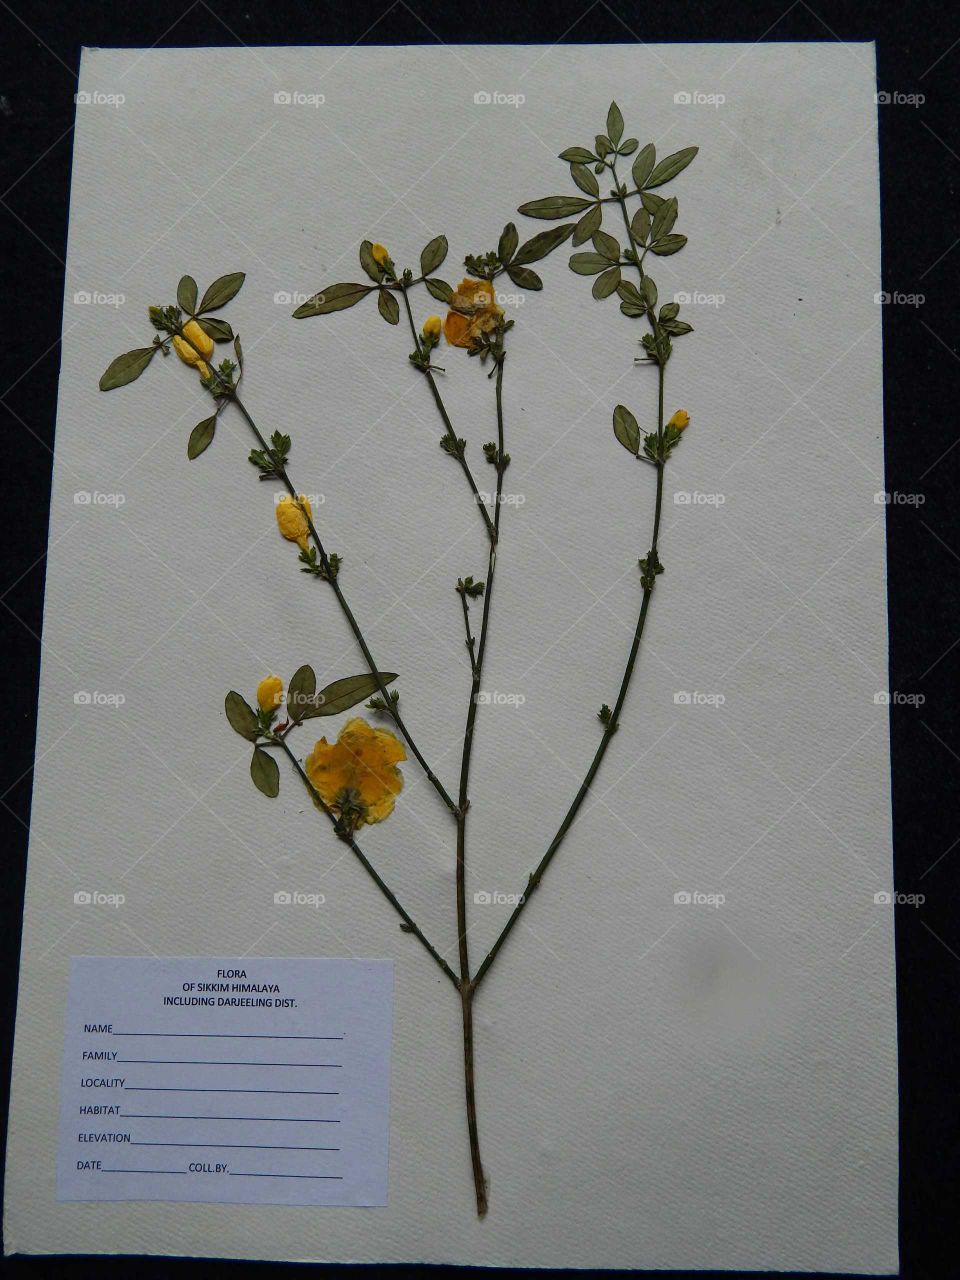 Herbarium of a plant specimen